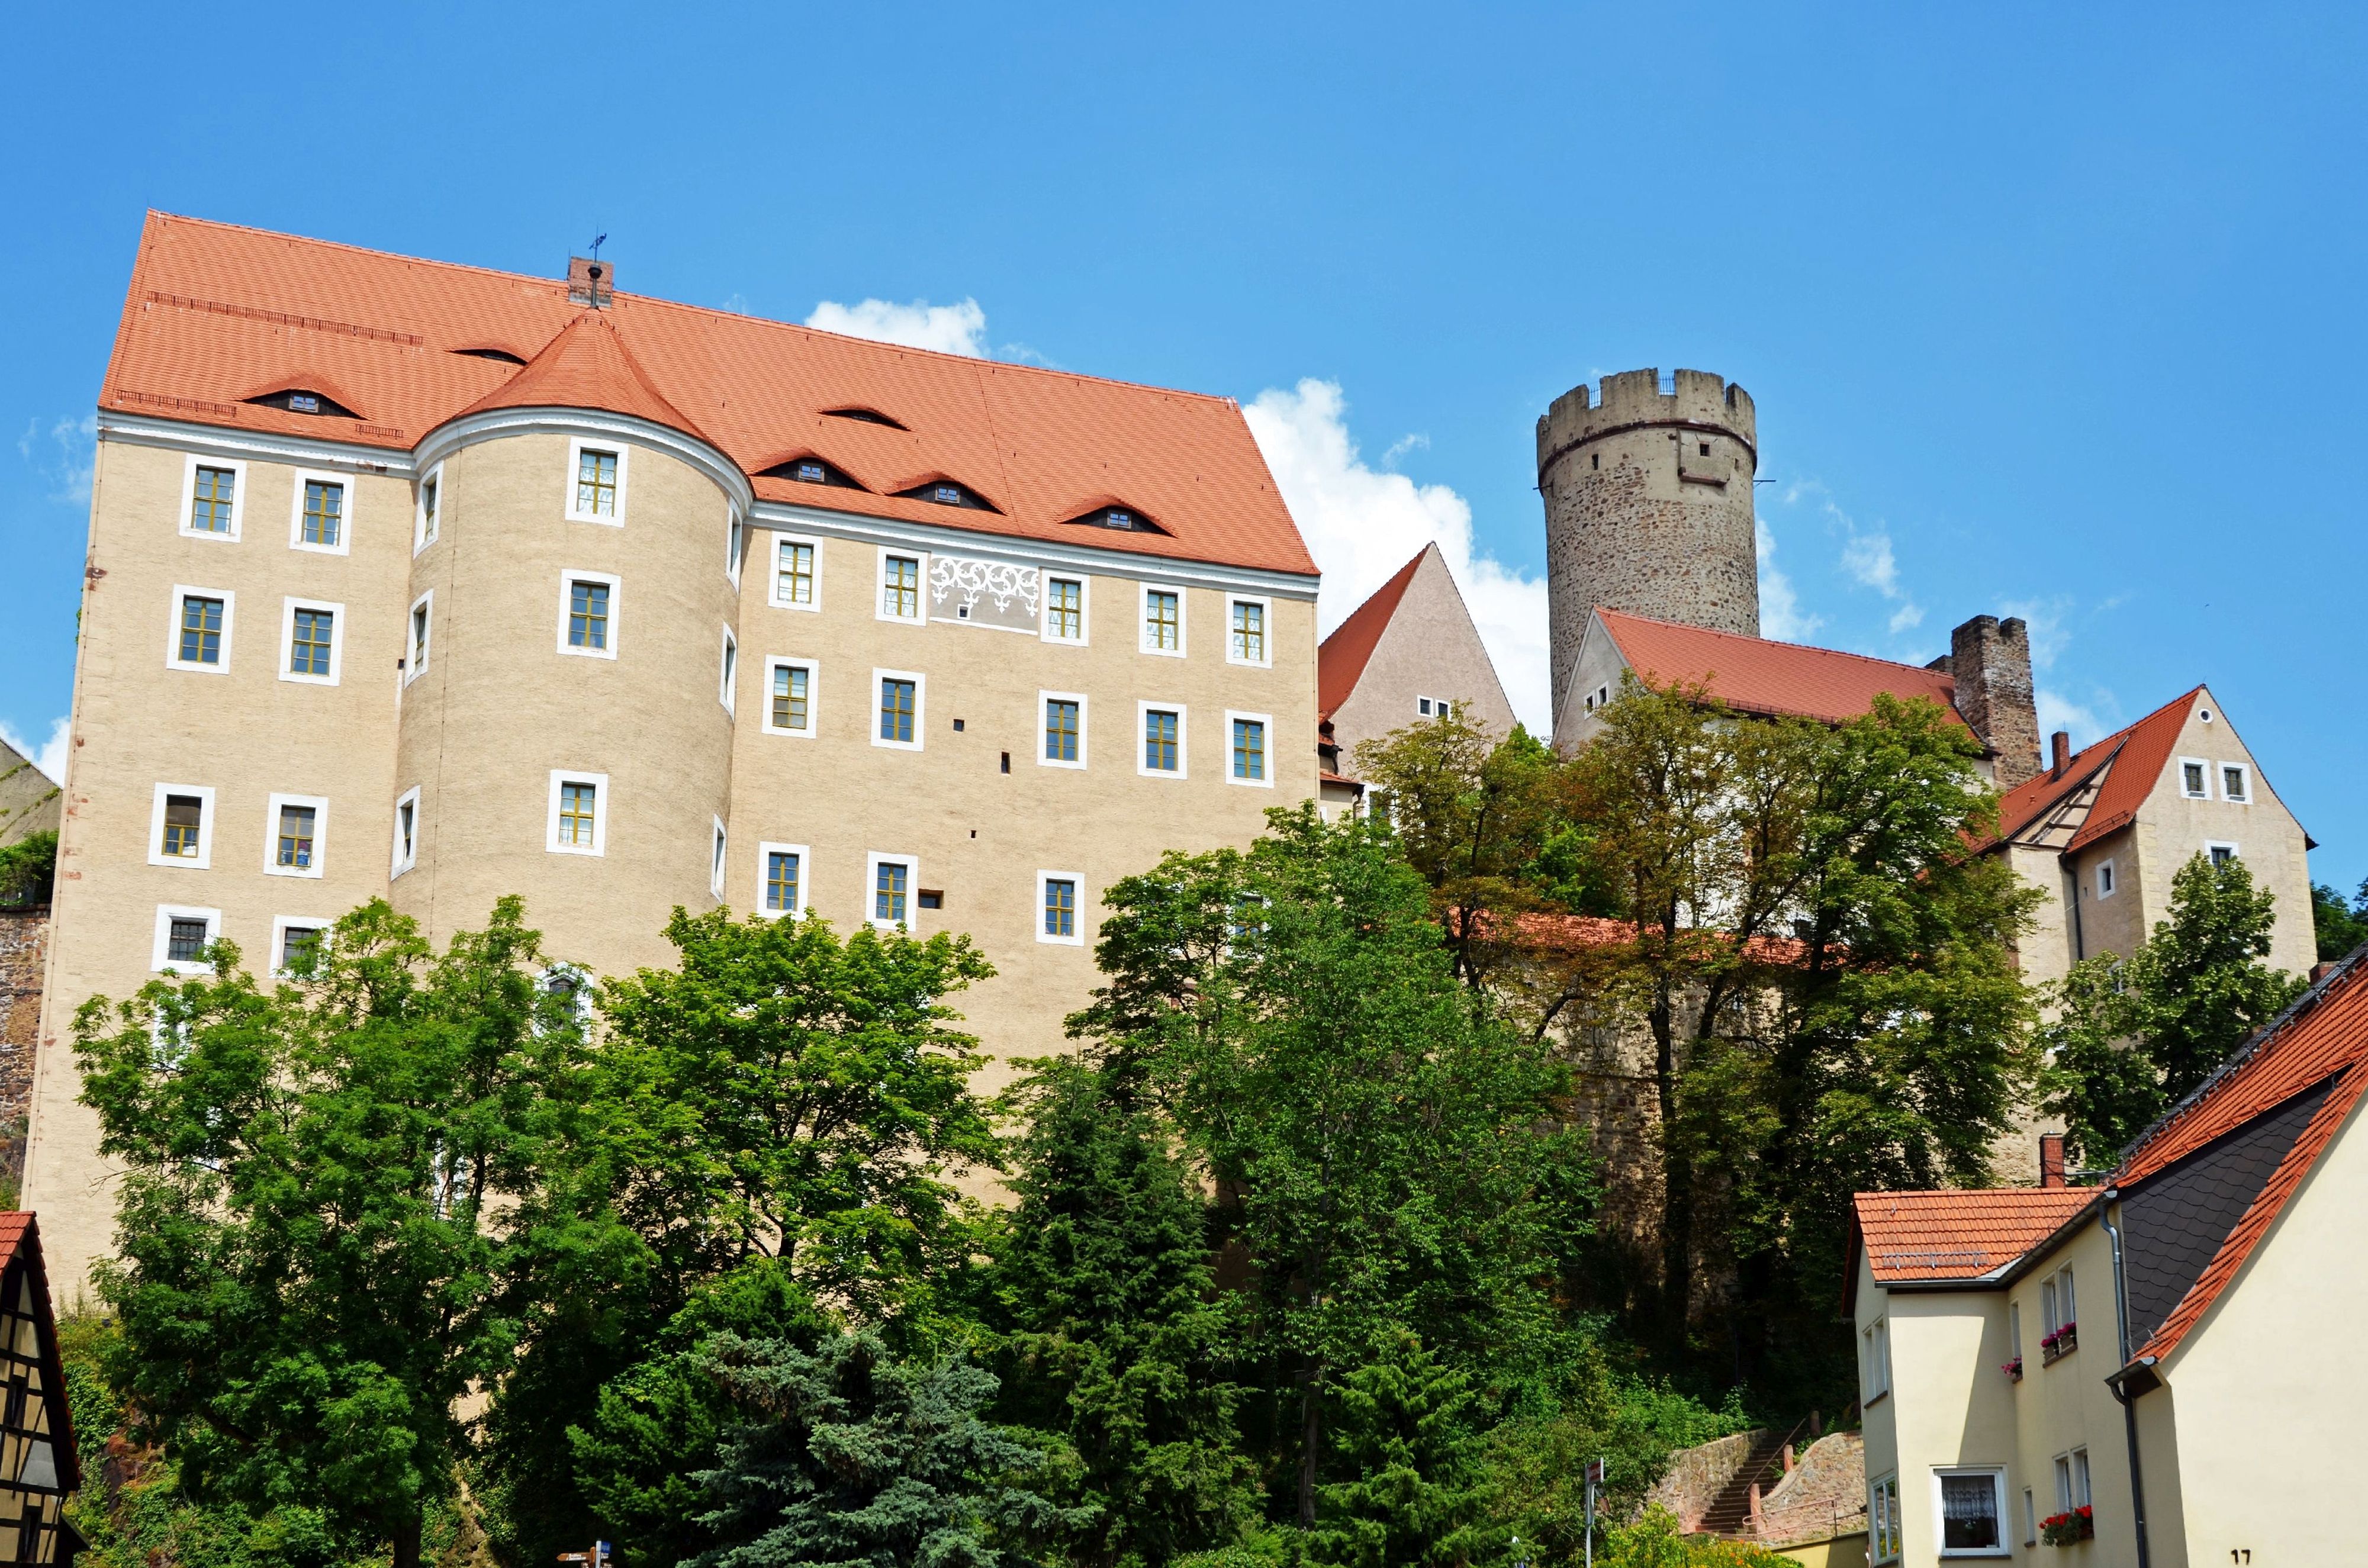 Burg Gnandstein im historischen Örtchen Gnandstein im Kohrener Land, zu sehen ist eine Außenansicht strahlend blauem Himmel und mit grünen Bäumen vor der Burg © Andreas Schmidt